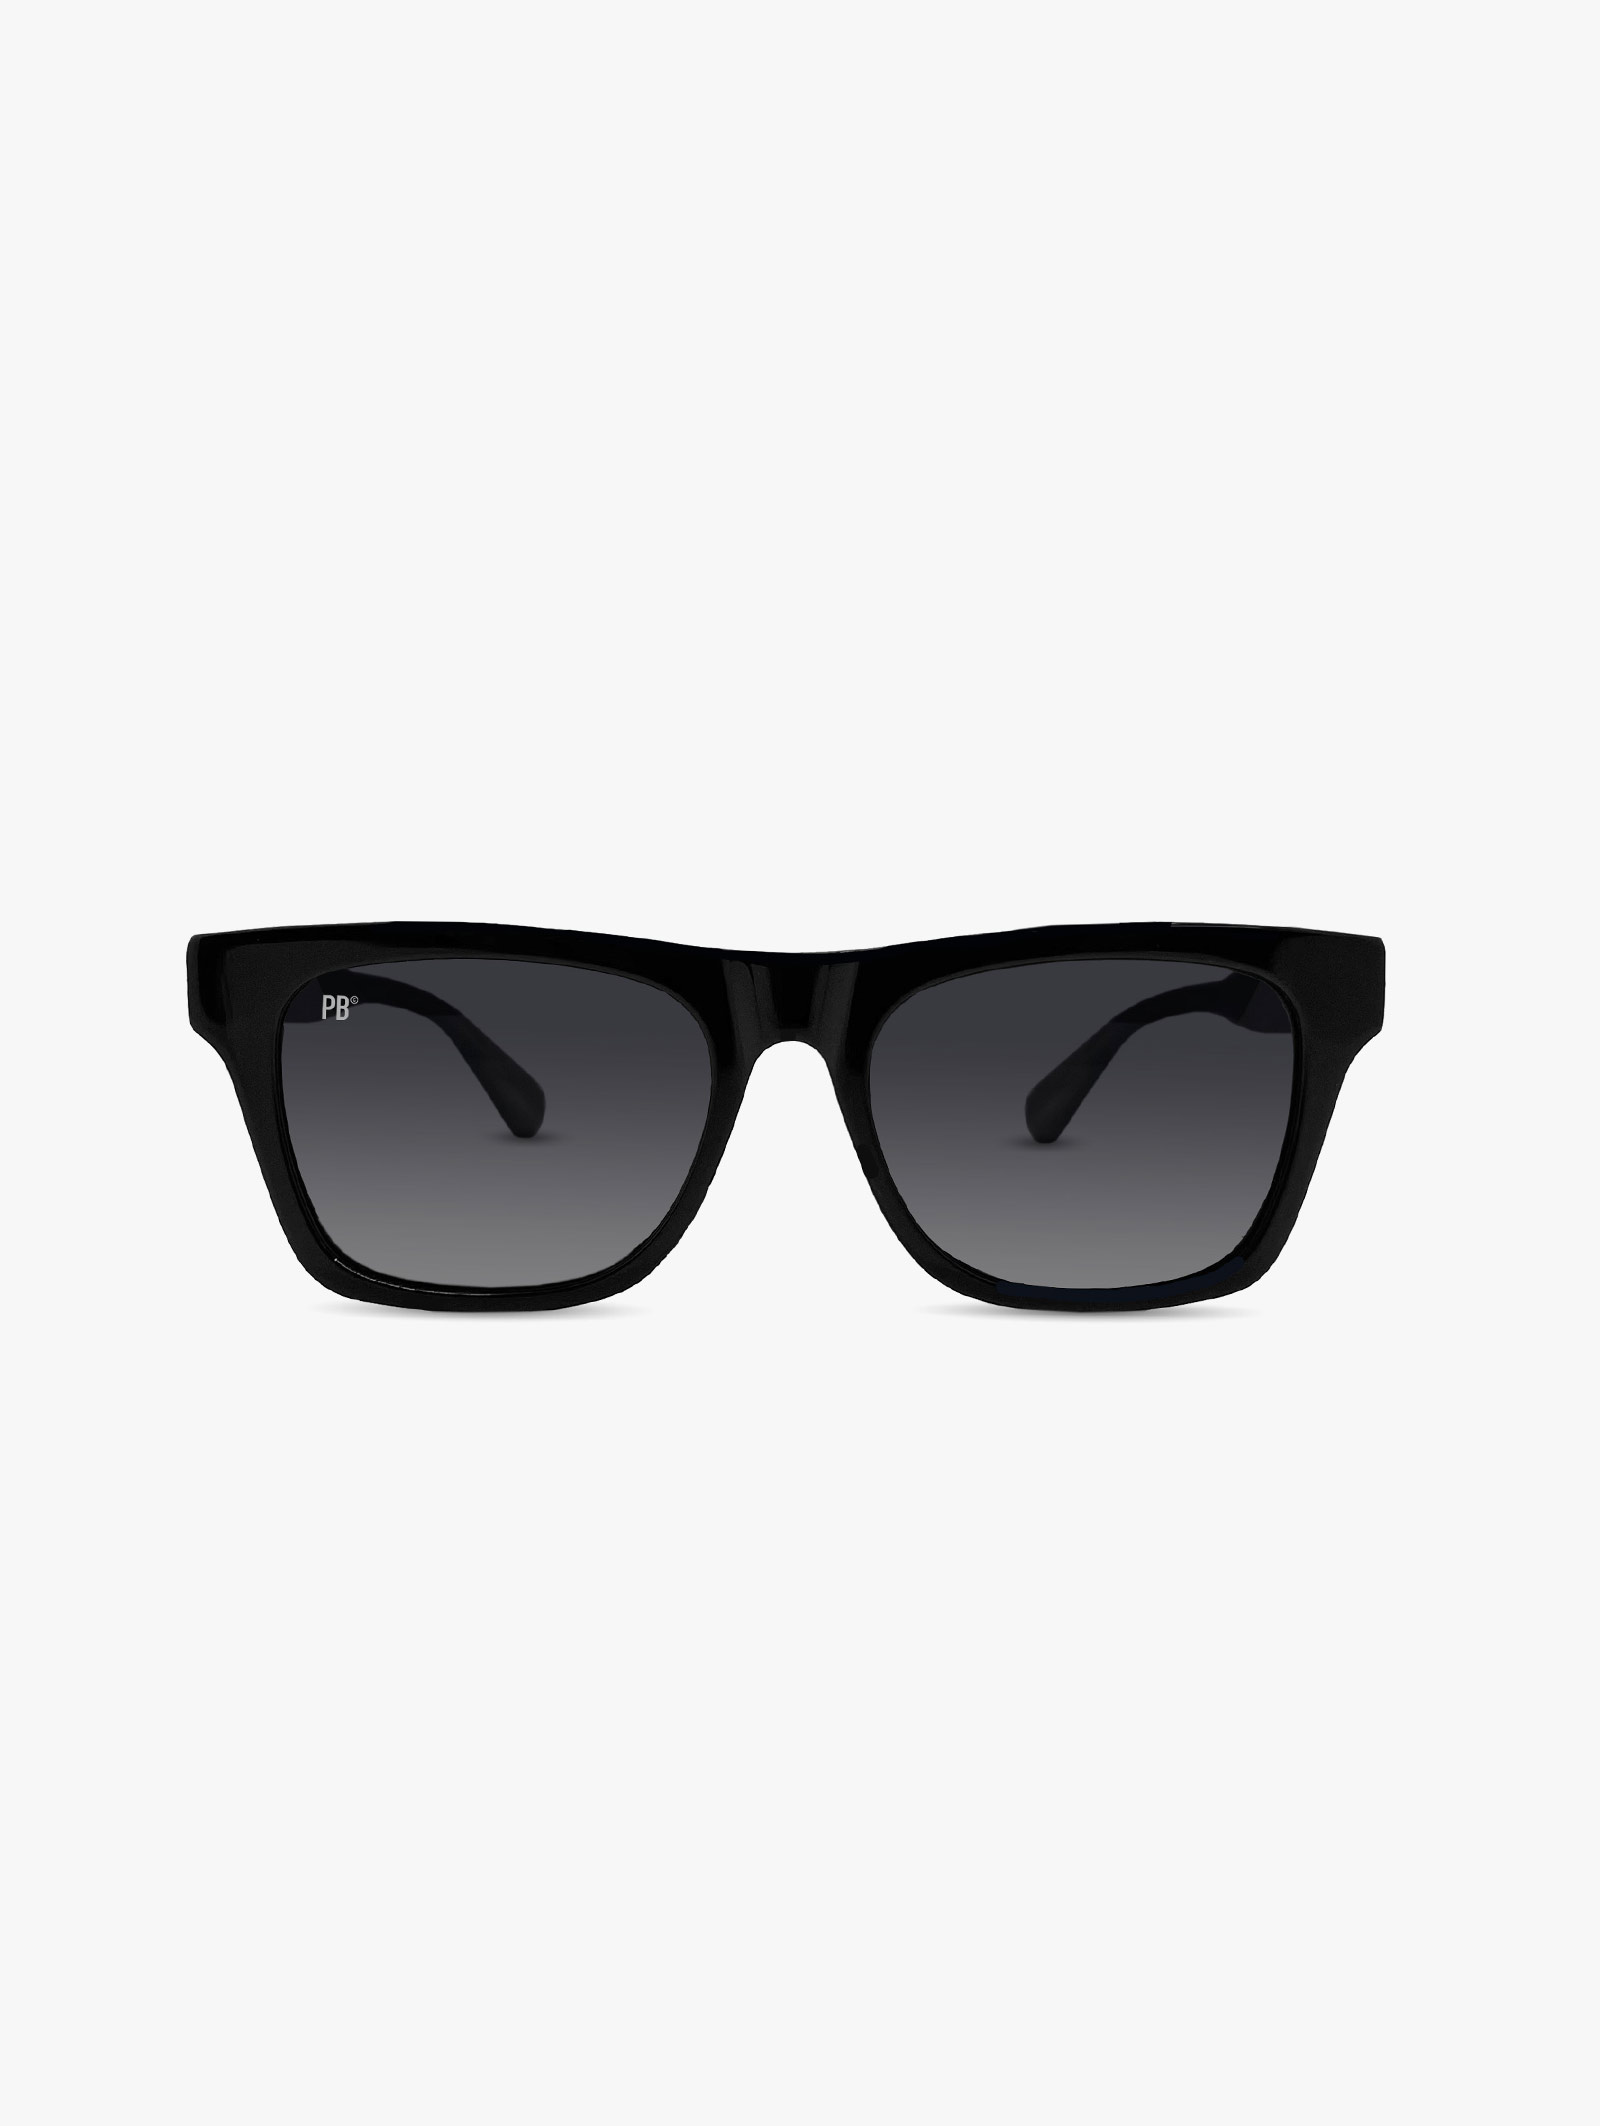 Schwarze Sonnenbrille Herren PB Sonnenbrille